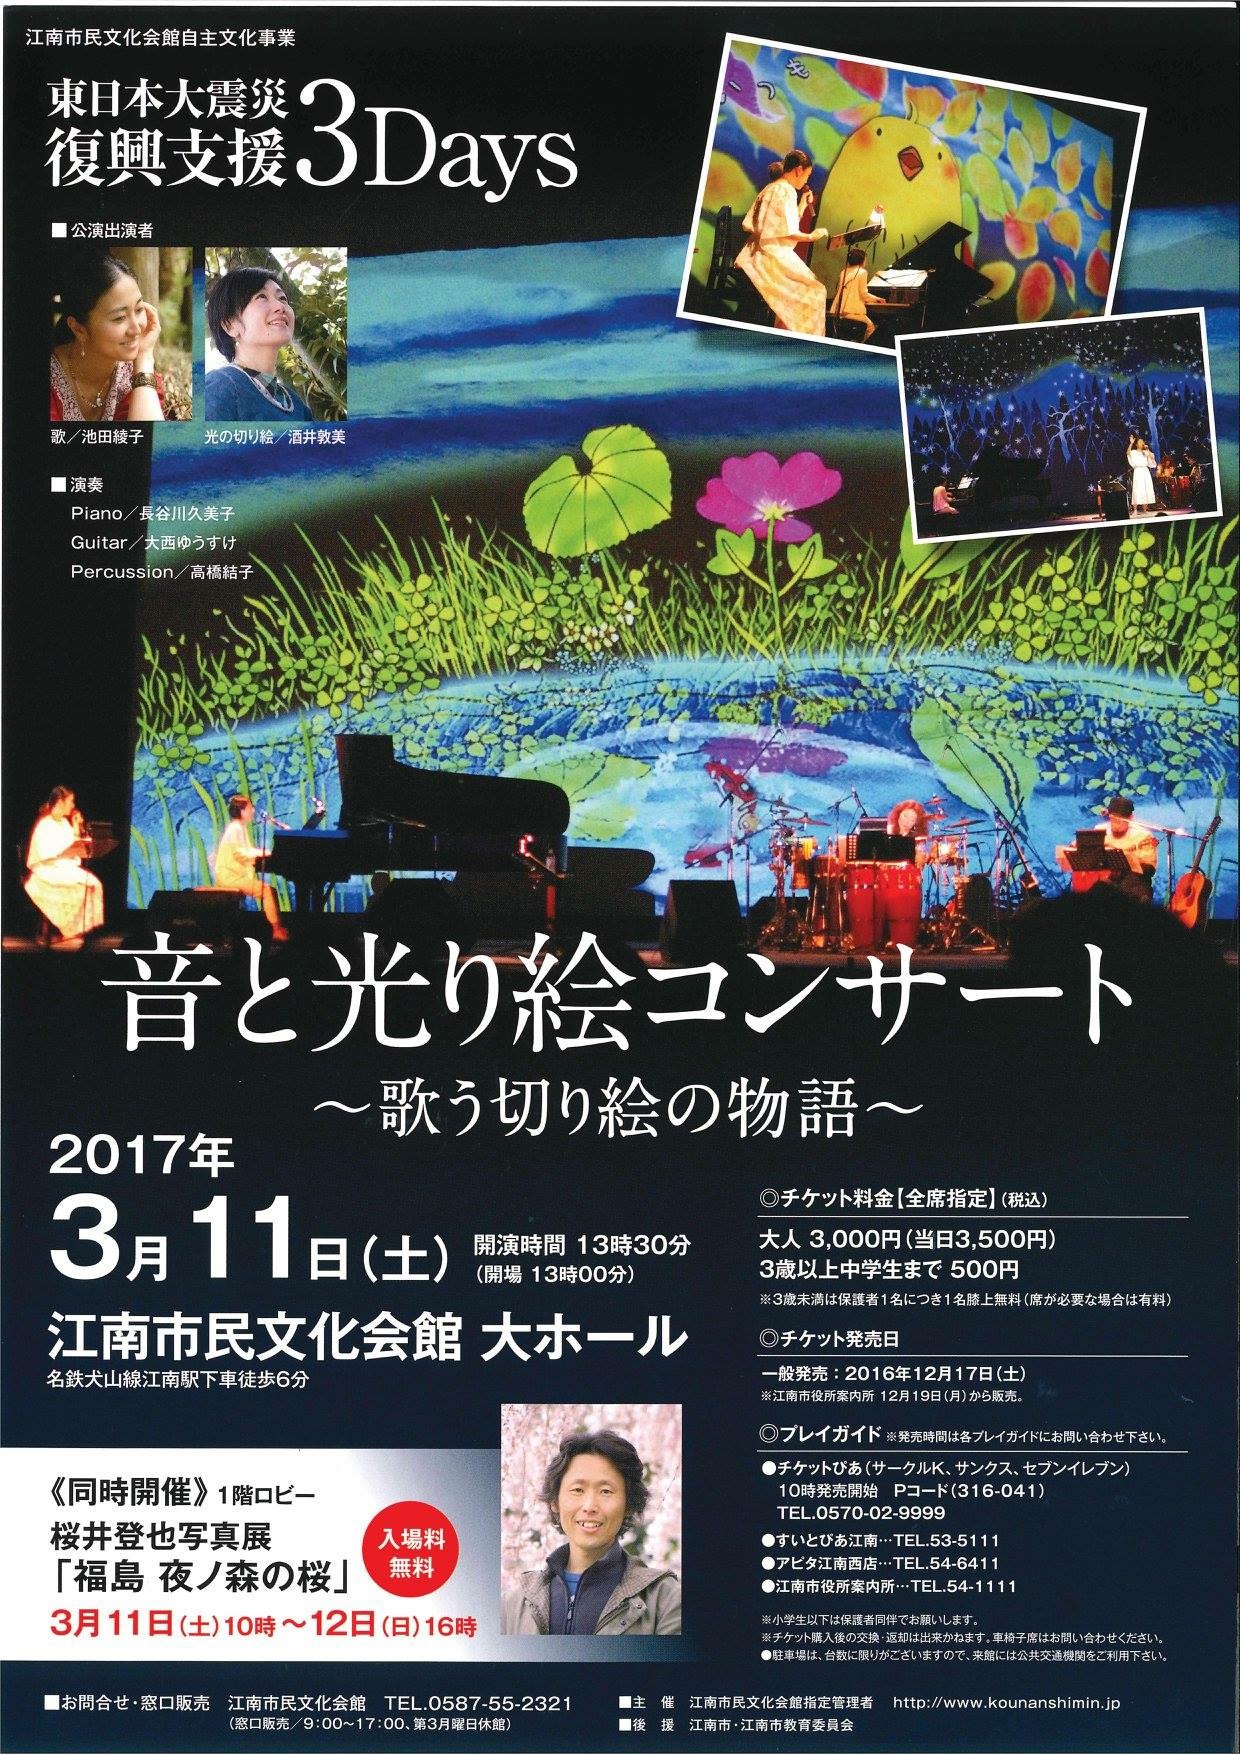 17 02 月 東日本大震災復興支援3days 音と光り絵コンサート 歌う切り絵の物語 に出演します 長谷川久美子 Hasegawa Kumiko Website